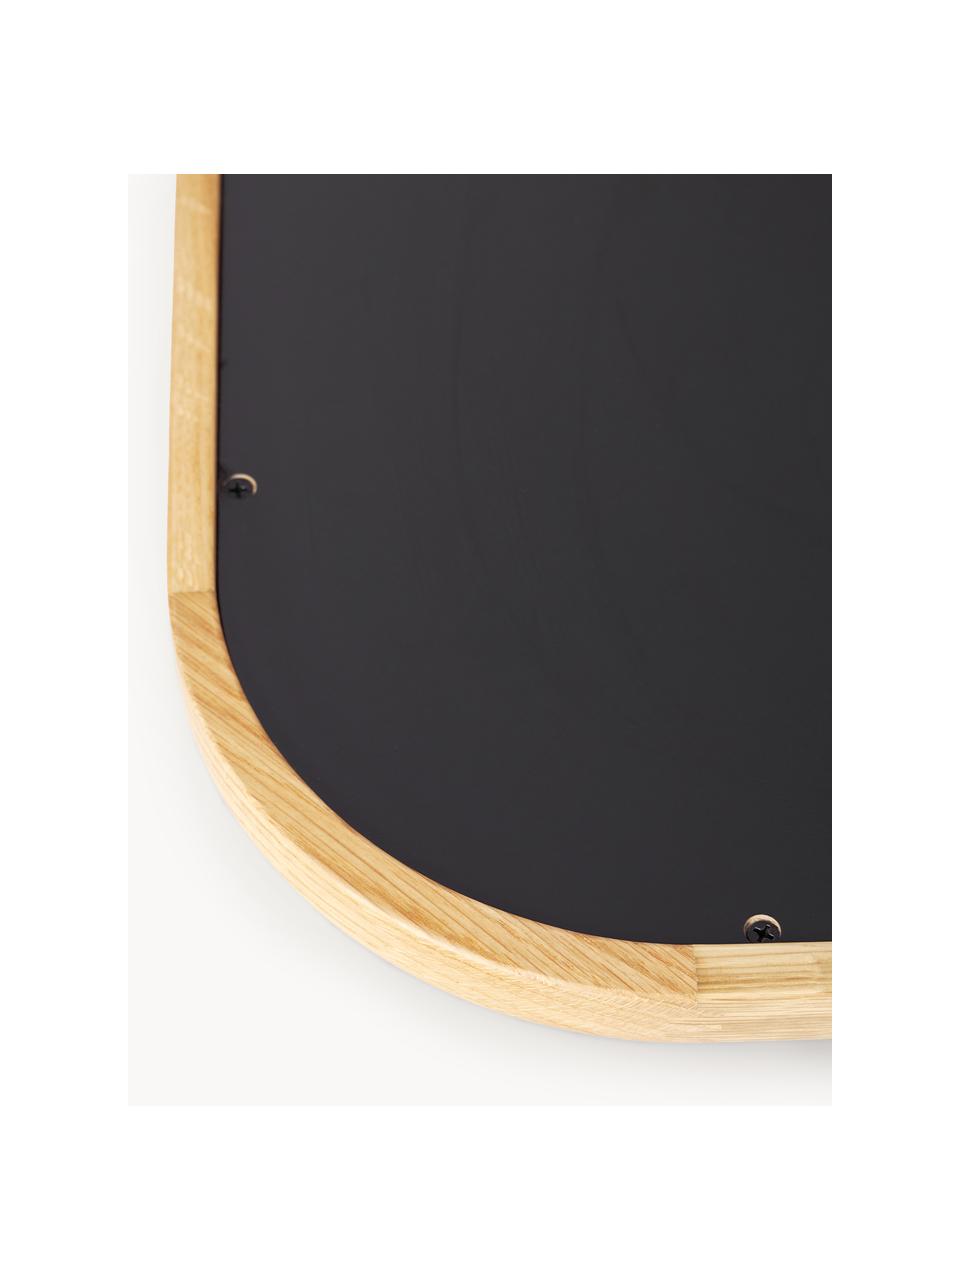 Großer Anlehnspiegel Levan mit Eichenholzrahmen, Rahmen: Eichenholz, FSC-zertifizi, Rückseite: Mitteldichte Holzfaserpla, Spiegelfläche: Spiegelglas, Eichenholz, B 80 x H 180 cm